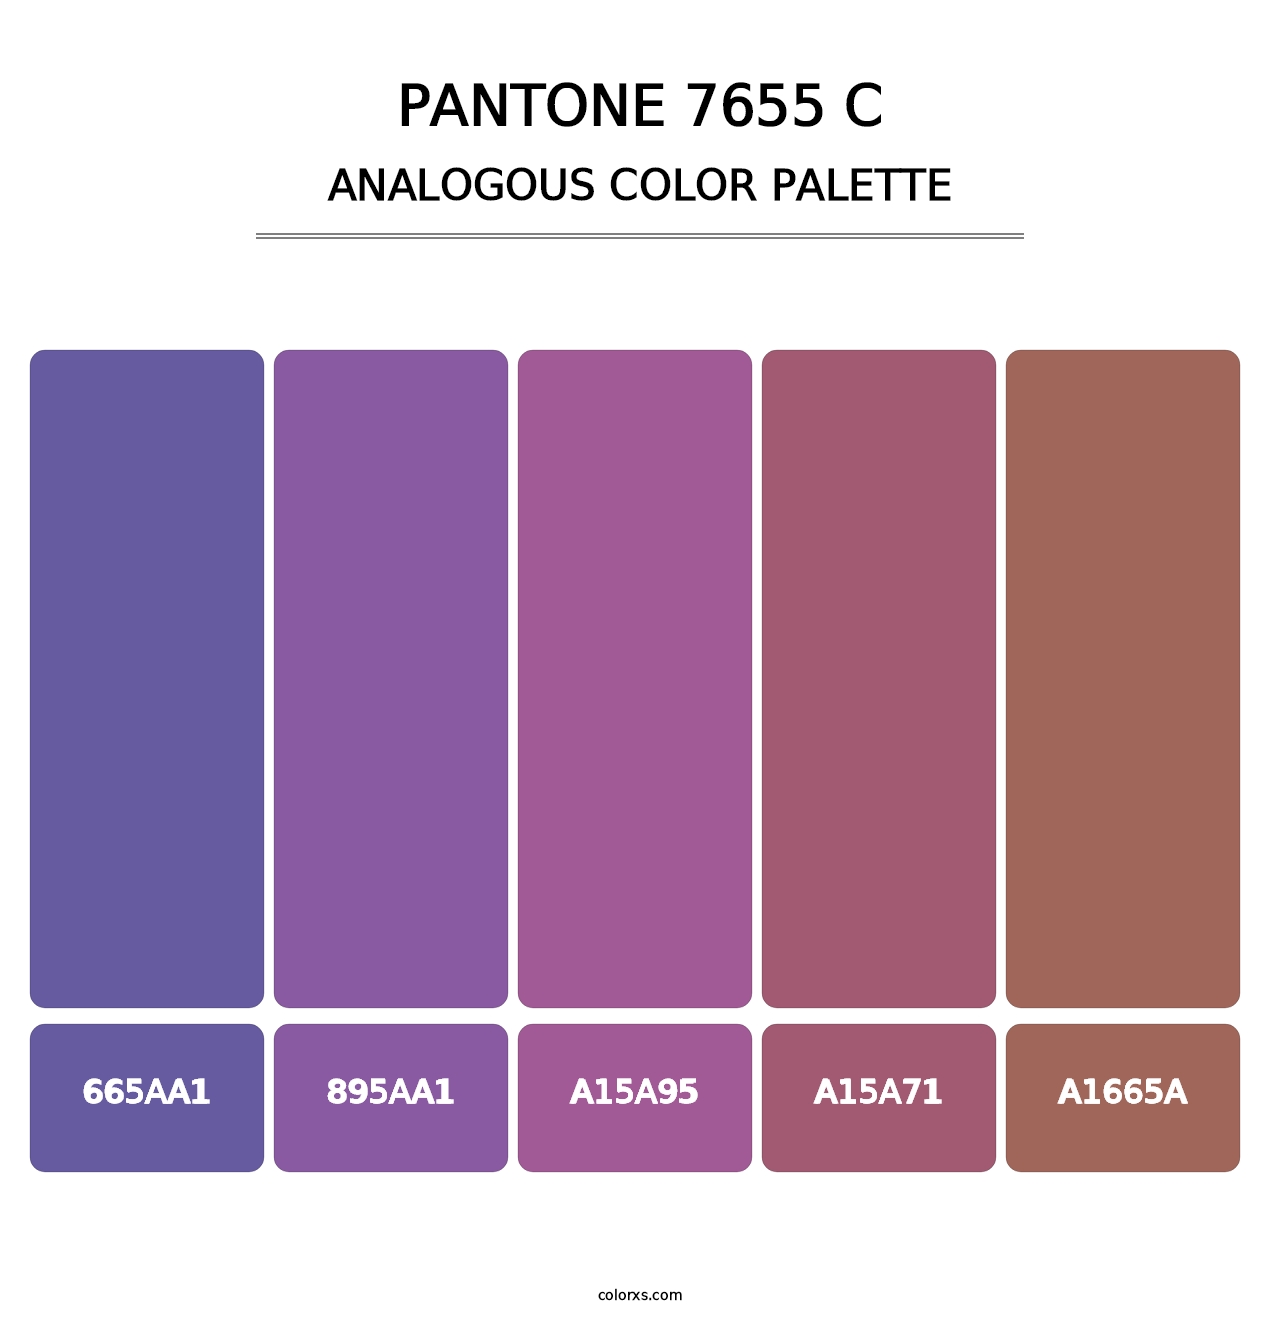 PANTONE 7655 C - Analogous Color Palette